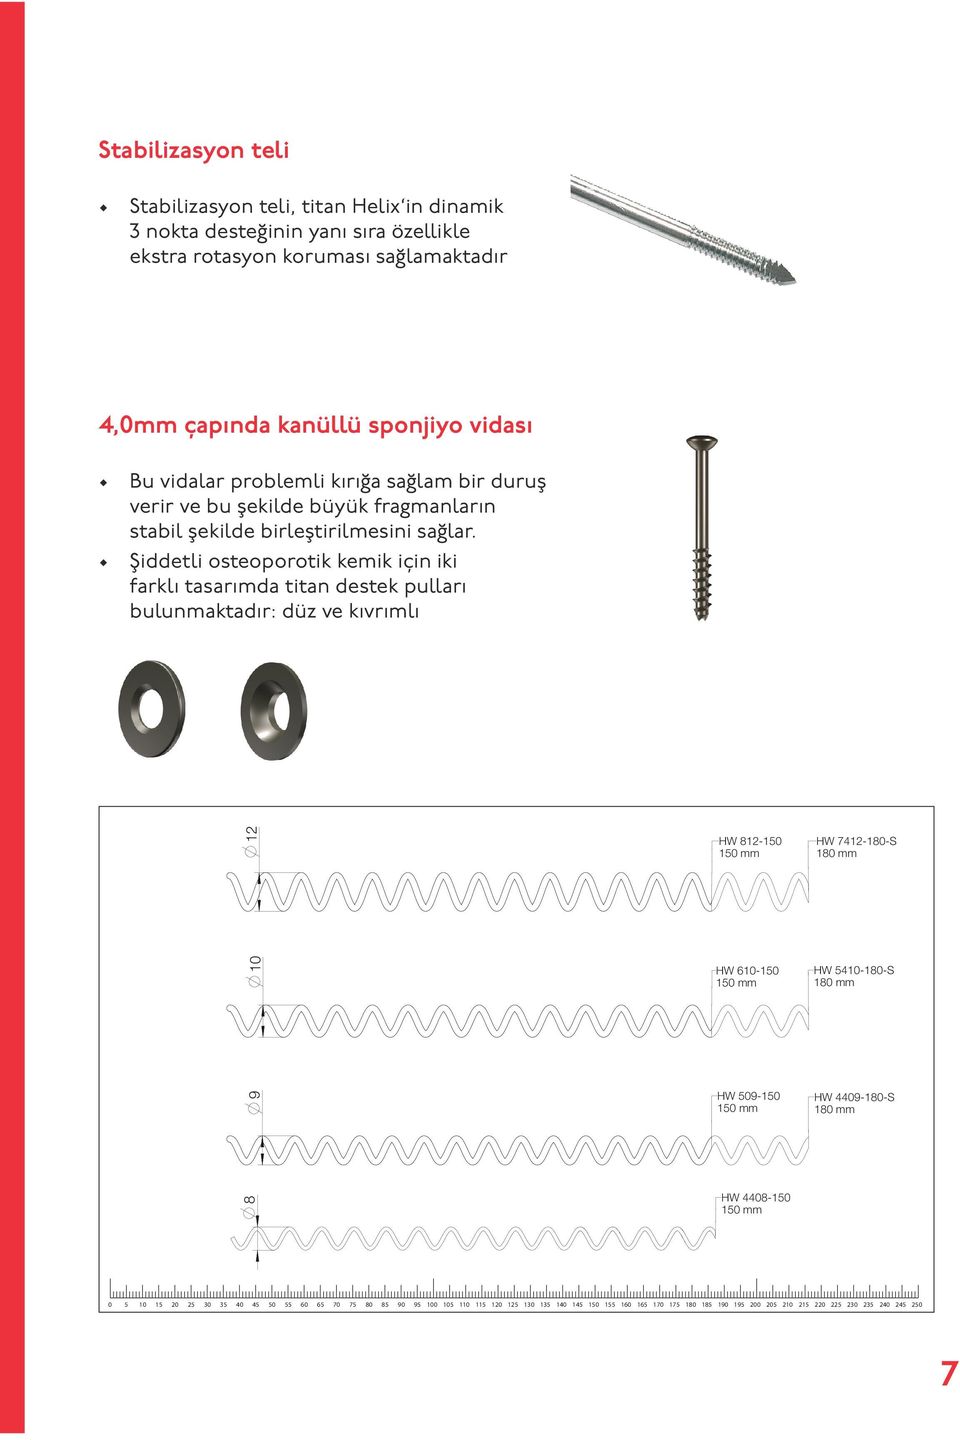 Şiddetli osteoporotik kemik için iki farklı tasarımda titan destek pulları bulunmaktadır: düz ve kıvrımlı Helix Wire 10 12 HW 812-150 150 mm HW 610-150 150 mm HW 7412-180-S 180 mm HW